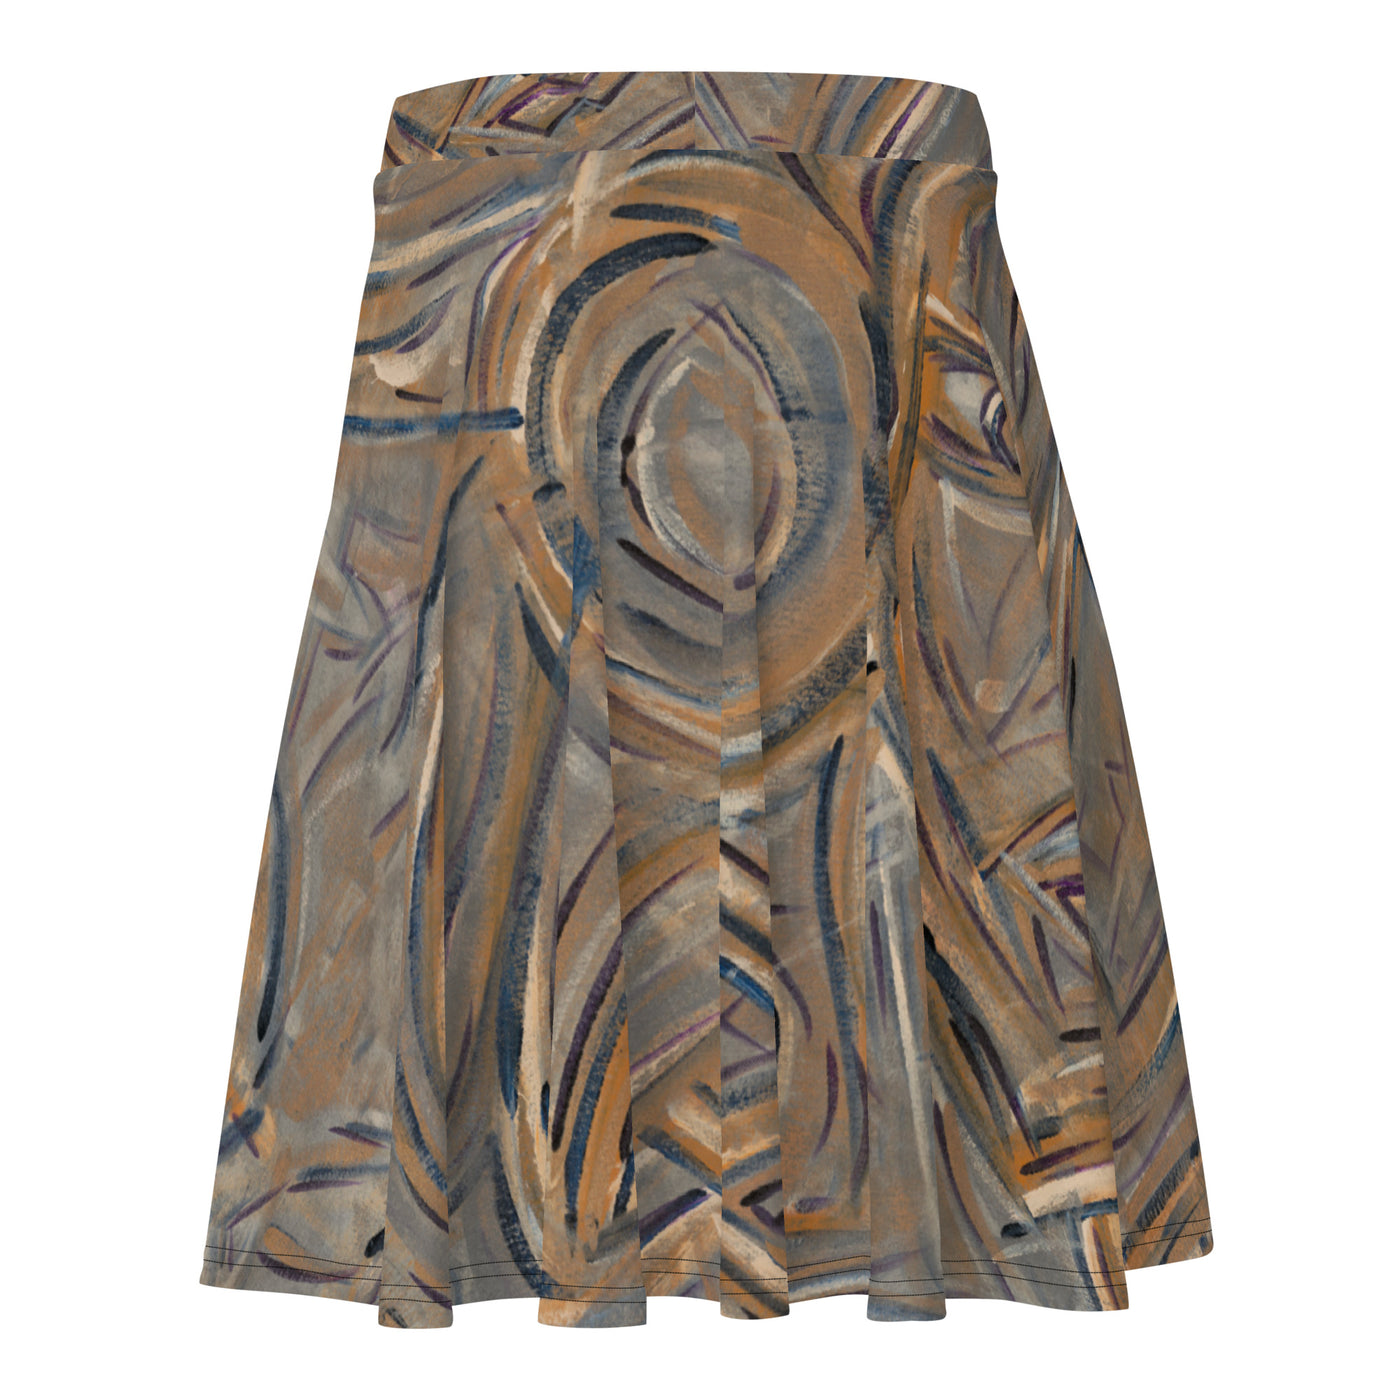 Goddess Art Skirt